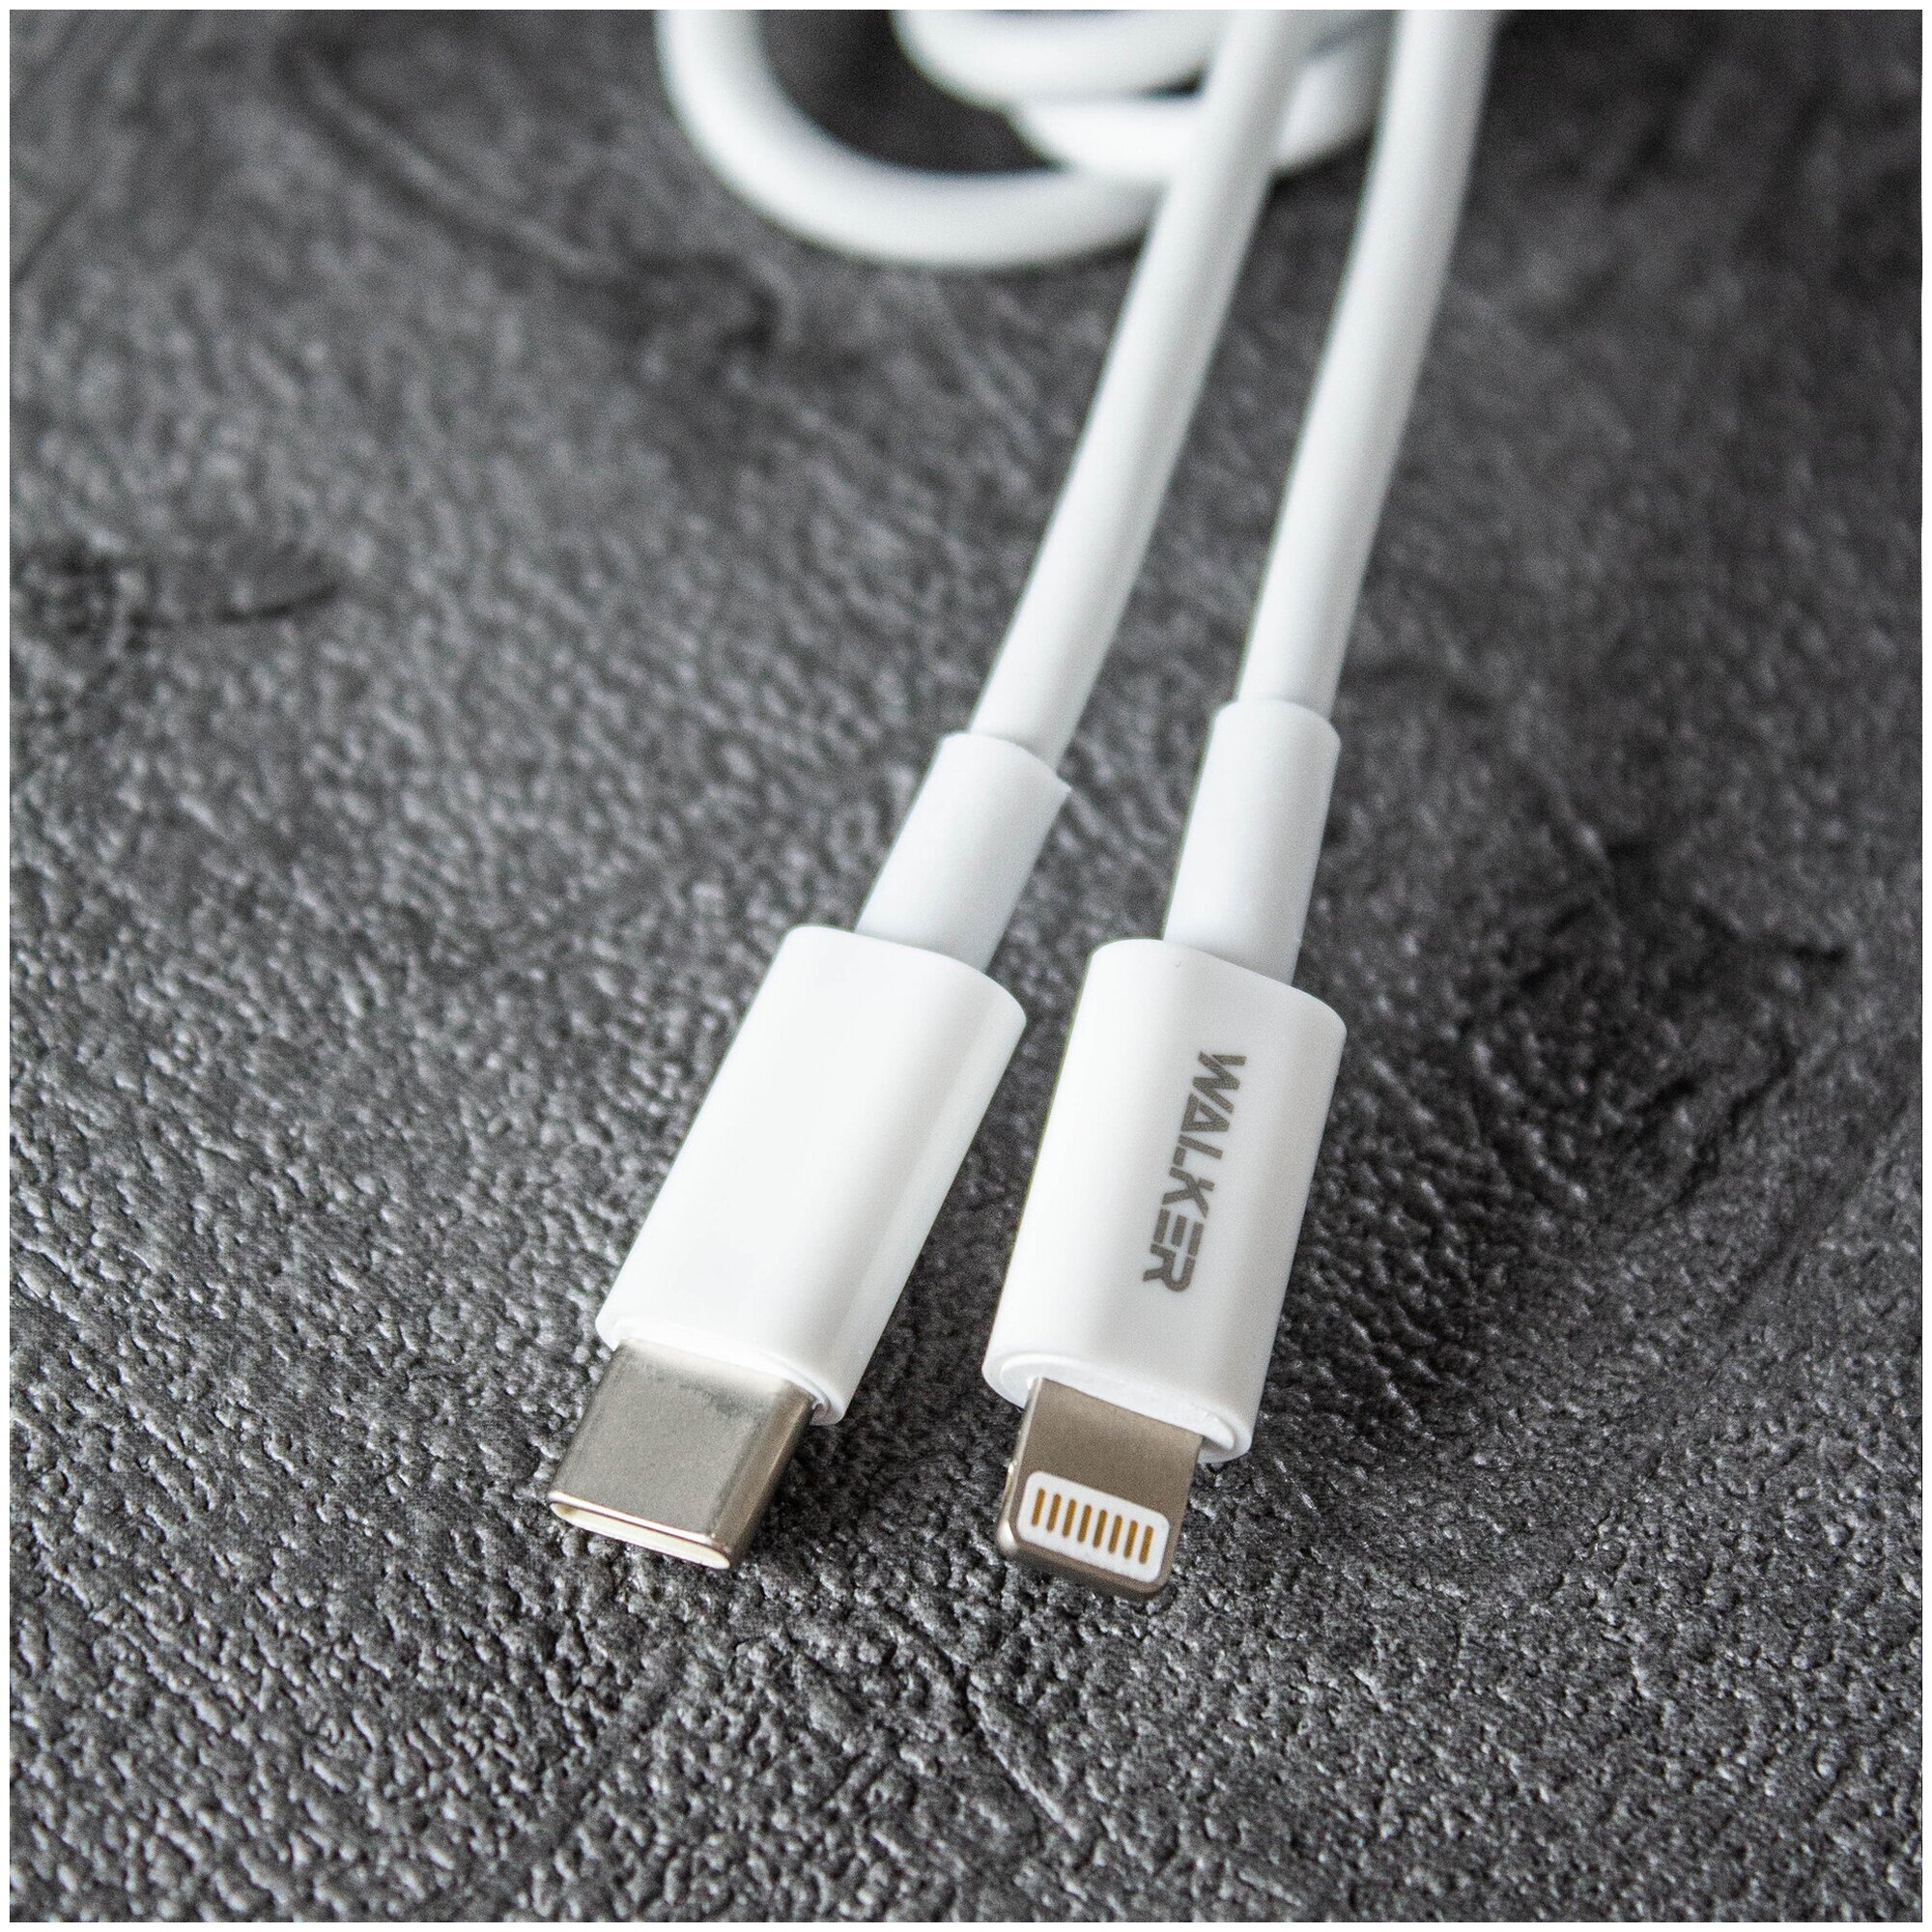 Кабель USB Type-C - Lightning WALKER С830 для Apple Iphone быстрый заряд 20W зарядное устройство на телефона шнур питания провод на айфон белый